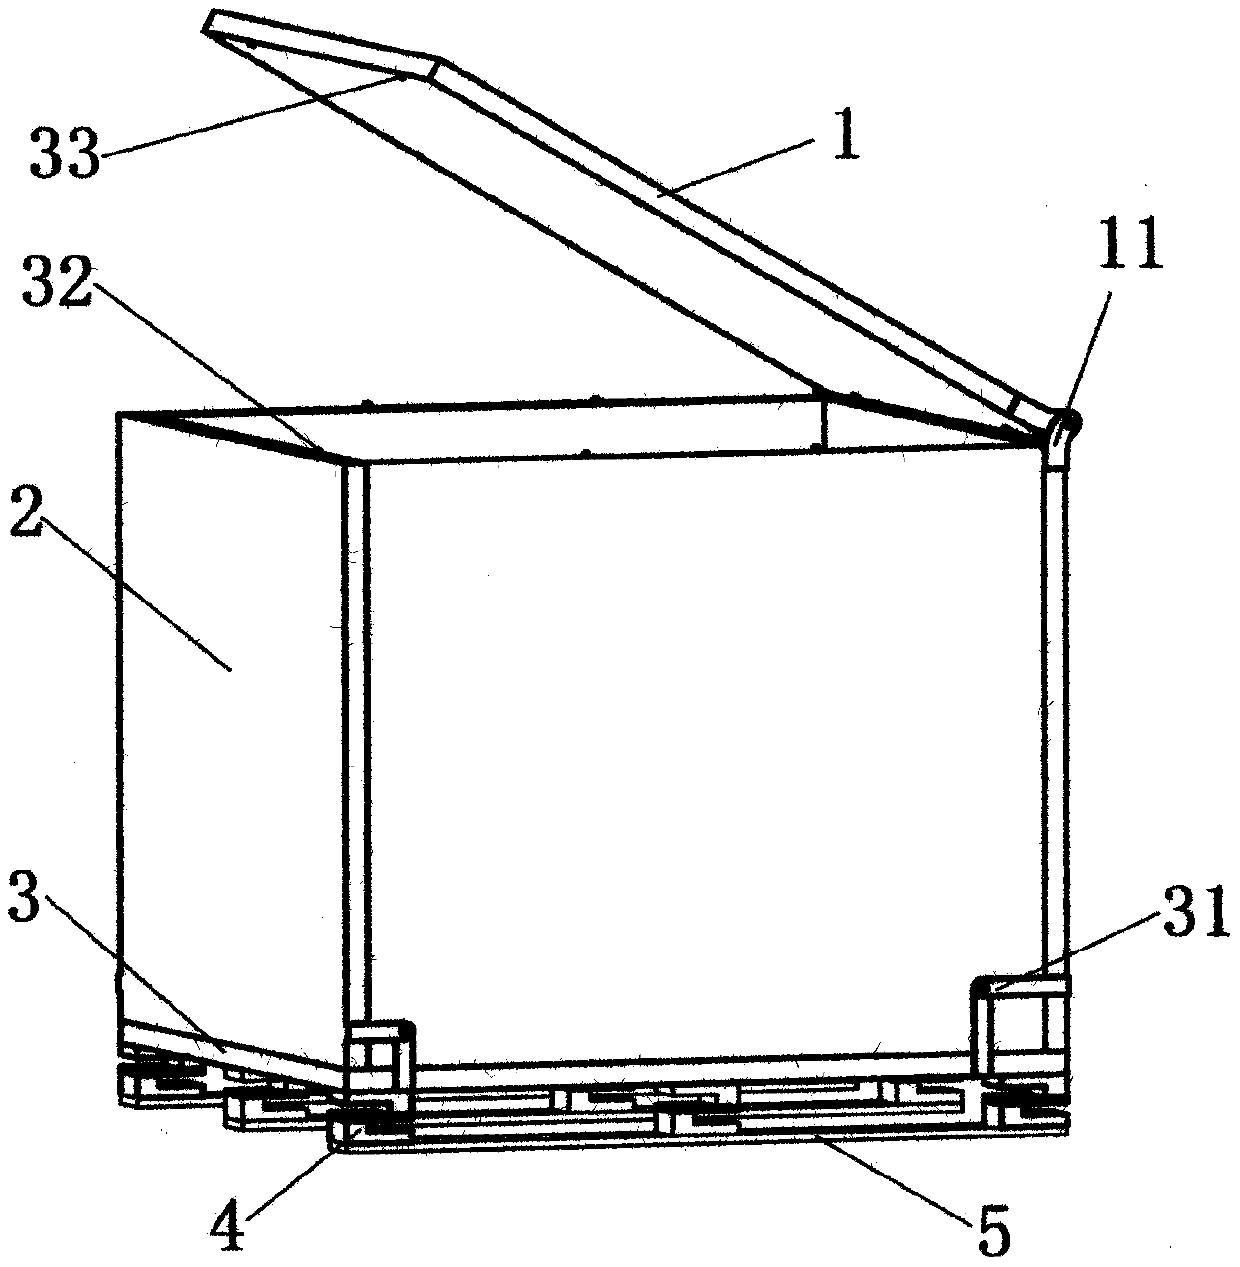 Foldable buffer packing box